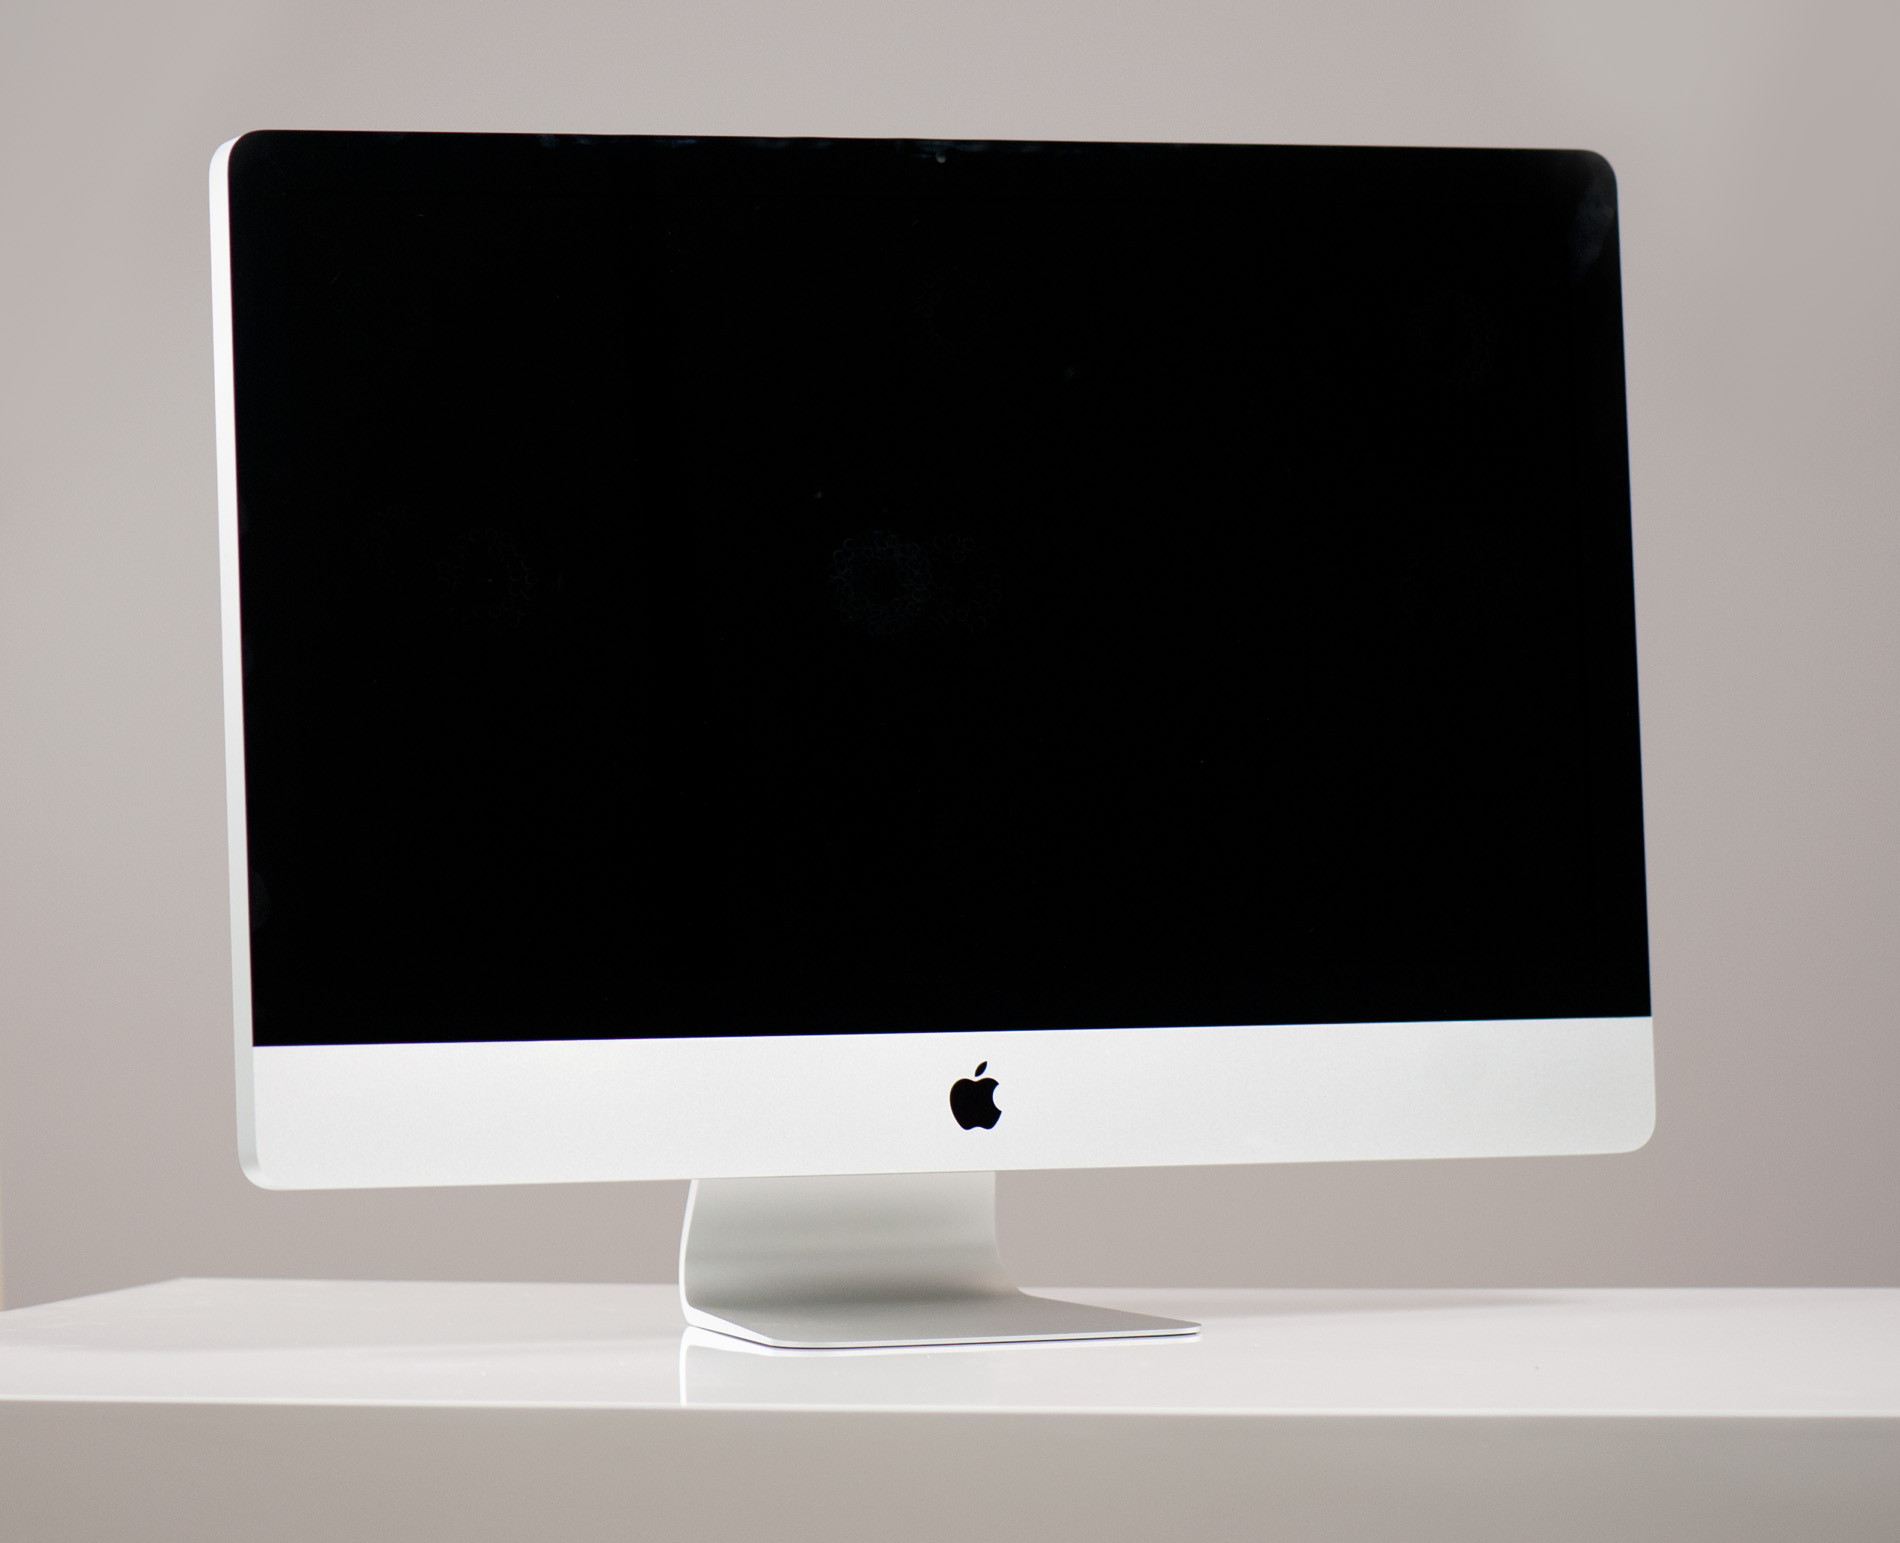 Apple планирует выпуск нового моноблока iMac с дисплеем 27 дюйма